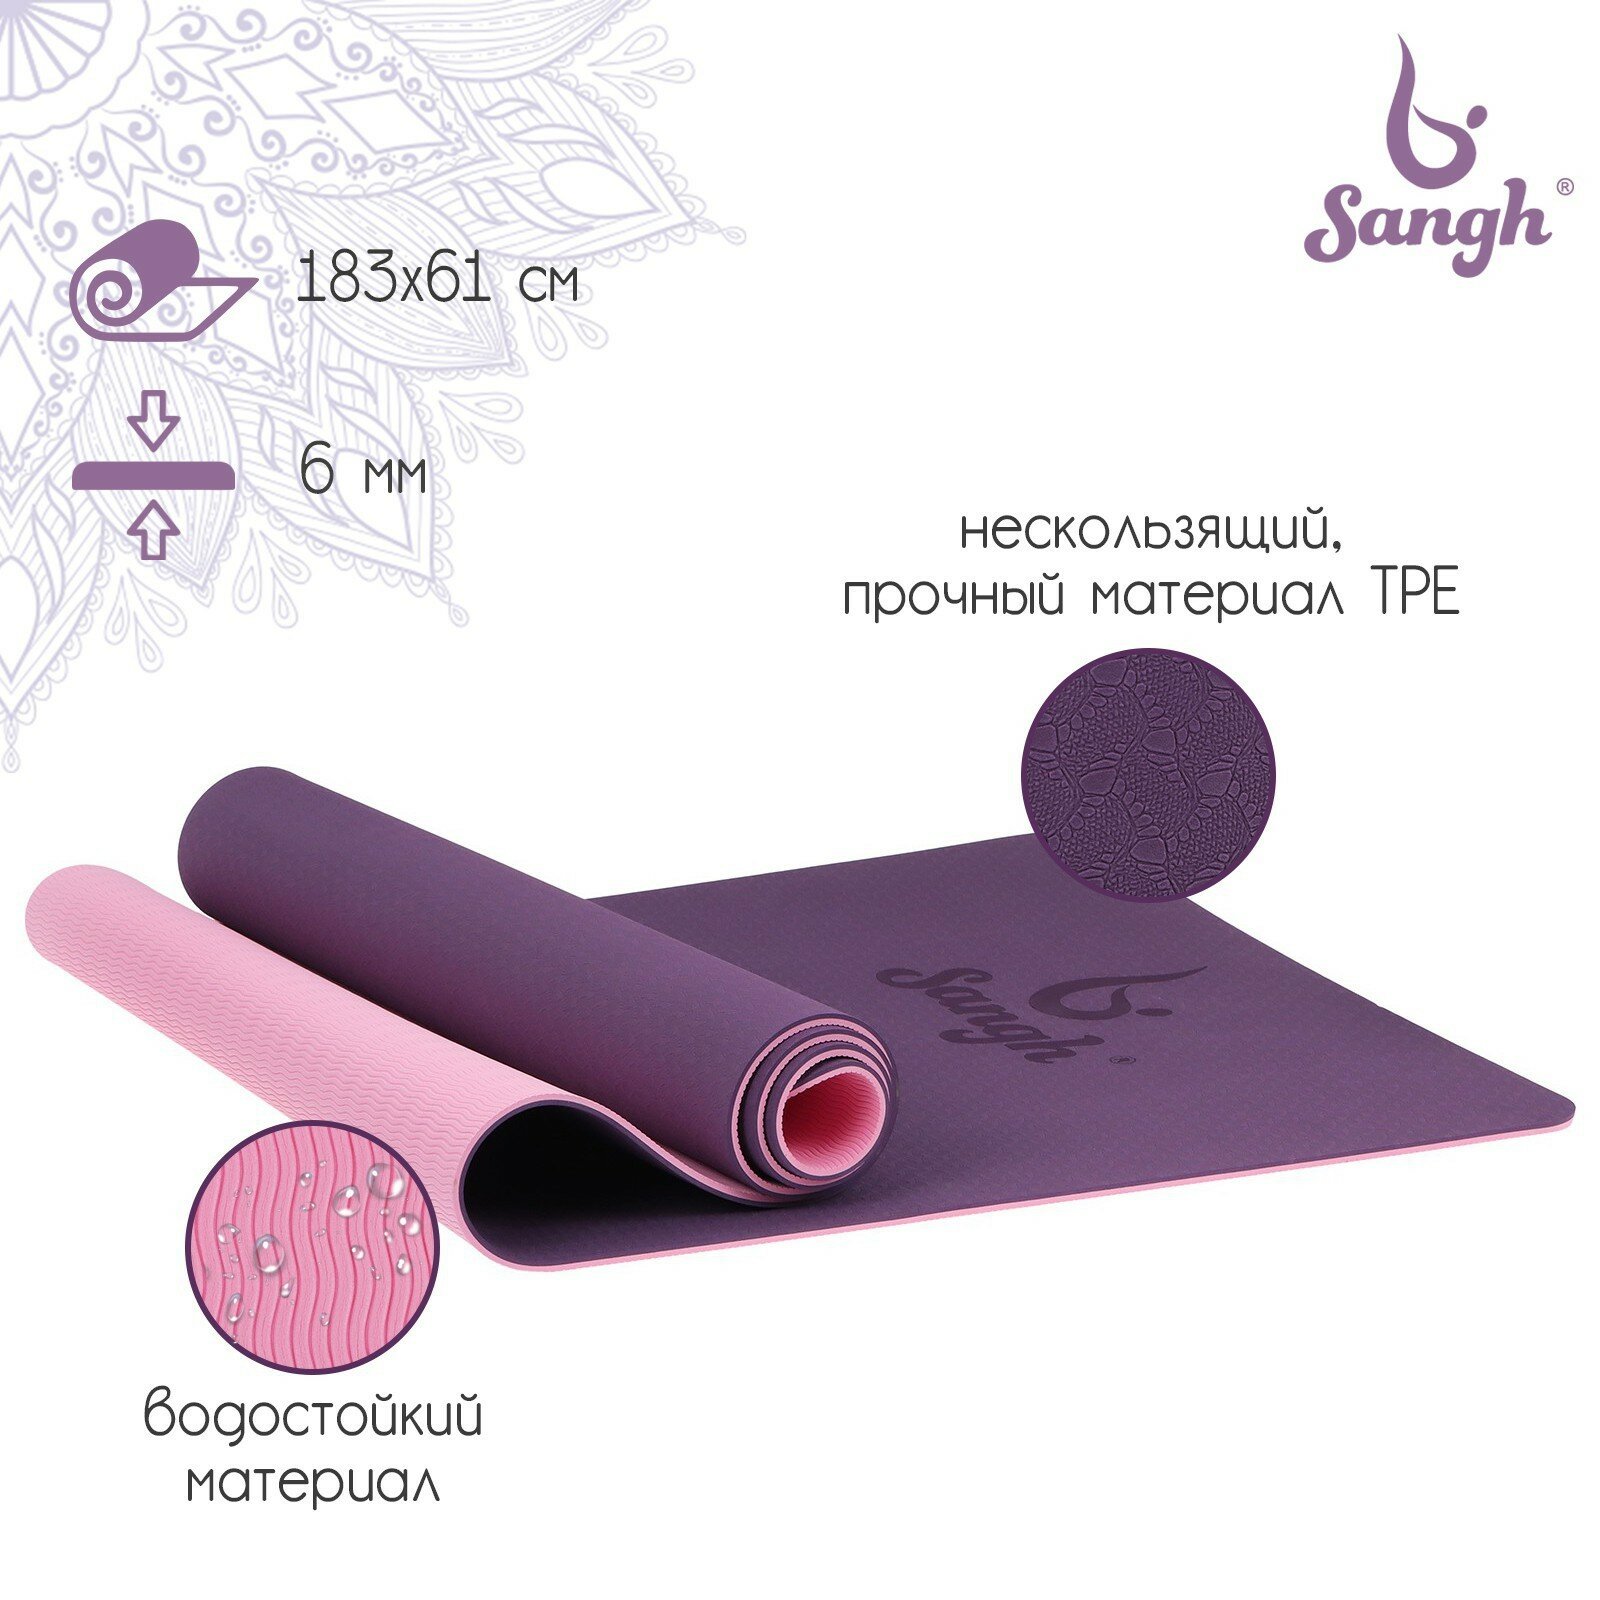 Коврик Sangh, для йоги, размеры 183 х 61 х 0,6 см, двухцветный, цвет фиолетовый, розовый